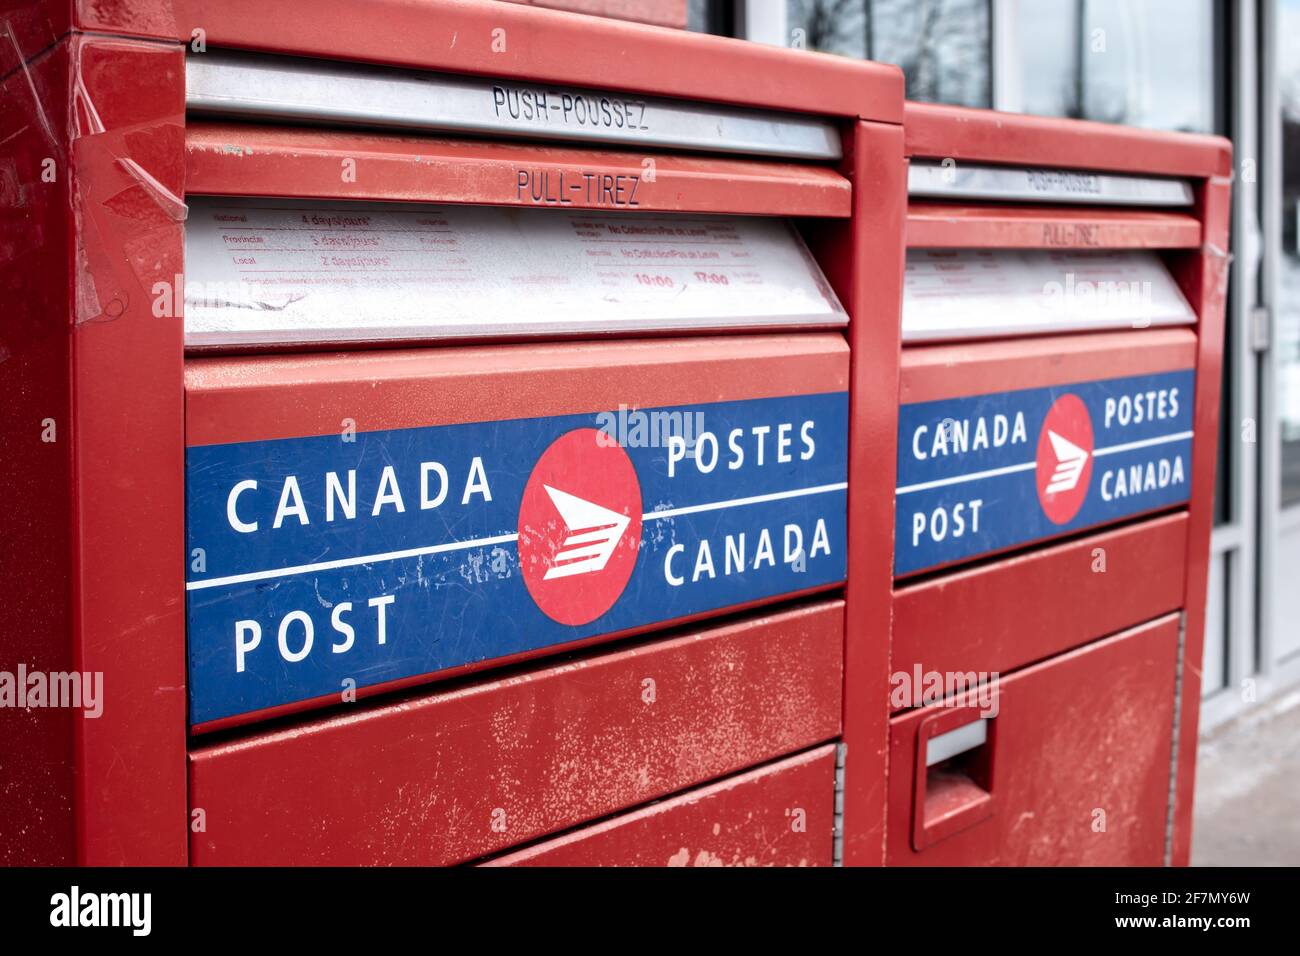 Londres, Ontario, Canadá - Febrero de 15 2021: Rojo, azul y blanco Canadá post metal letterbox, enfoque suave y fotografía en ángulo. Foto de stock